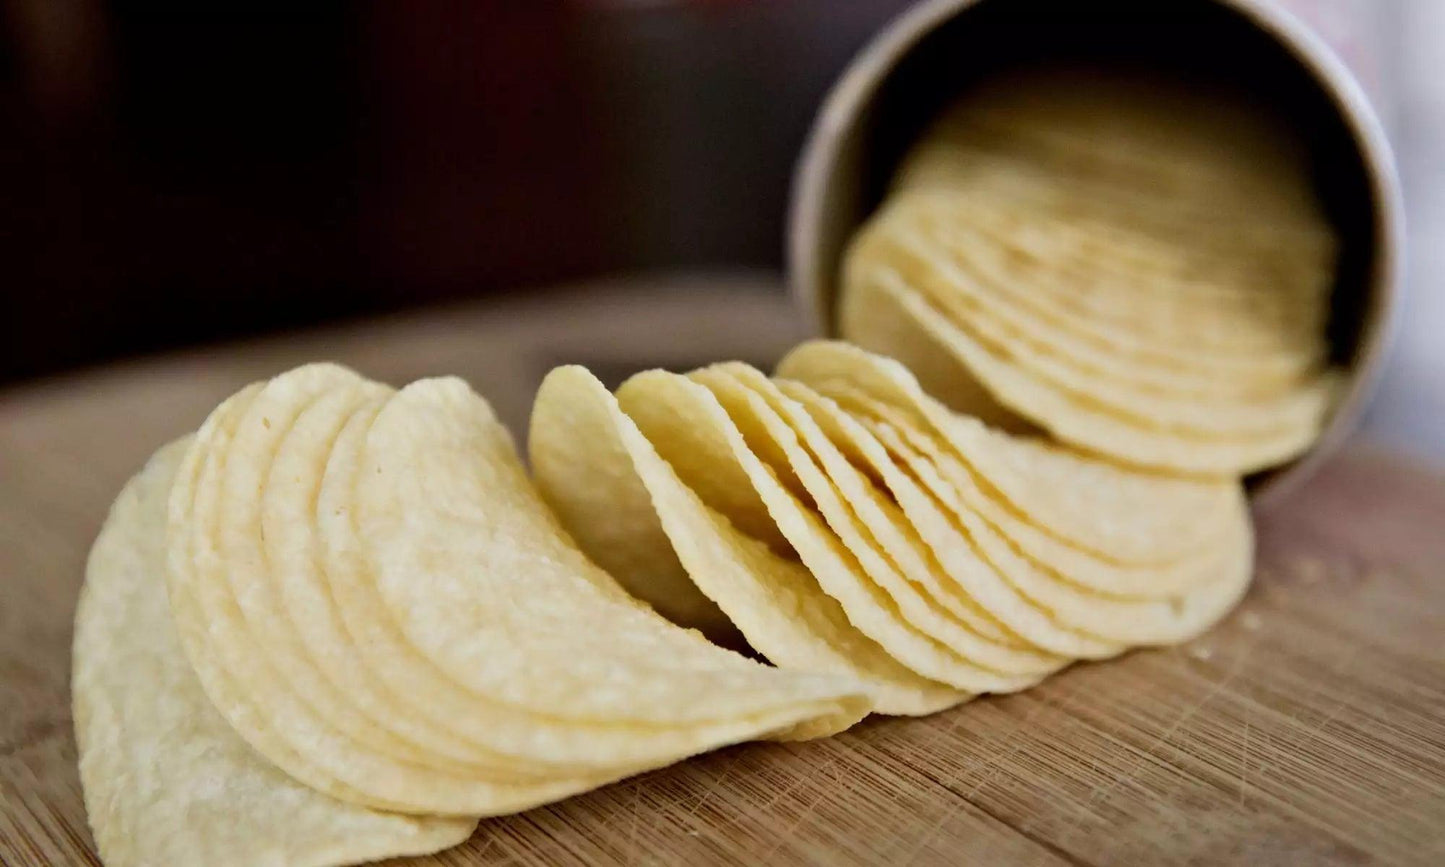 Pringles Original Crisps, 165g - Buongiorno Caffe' & More